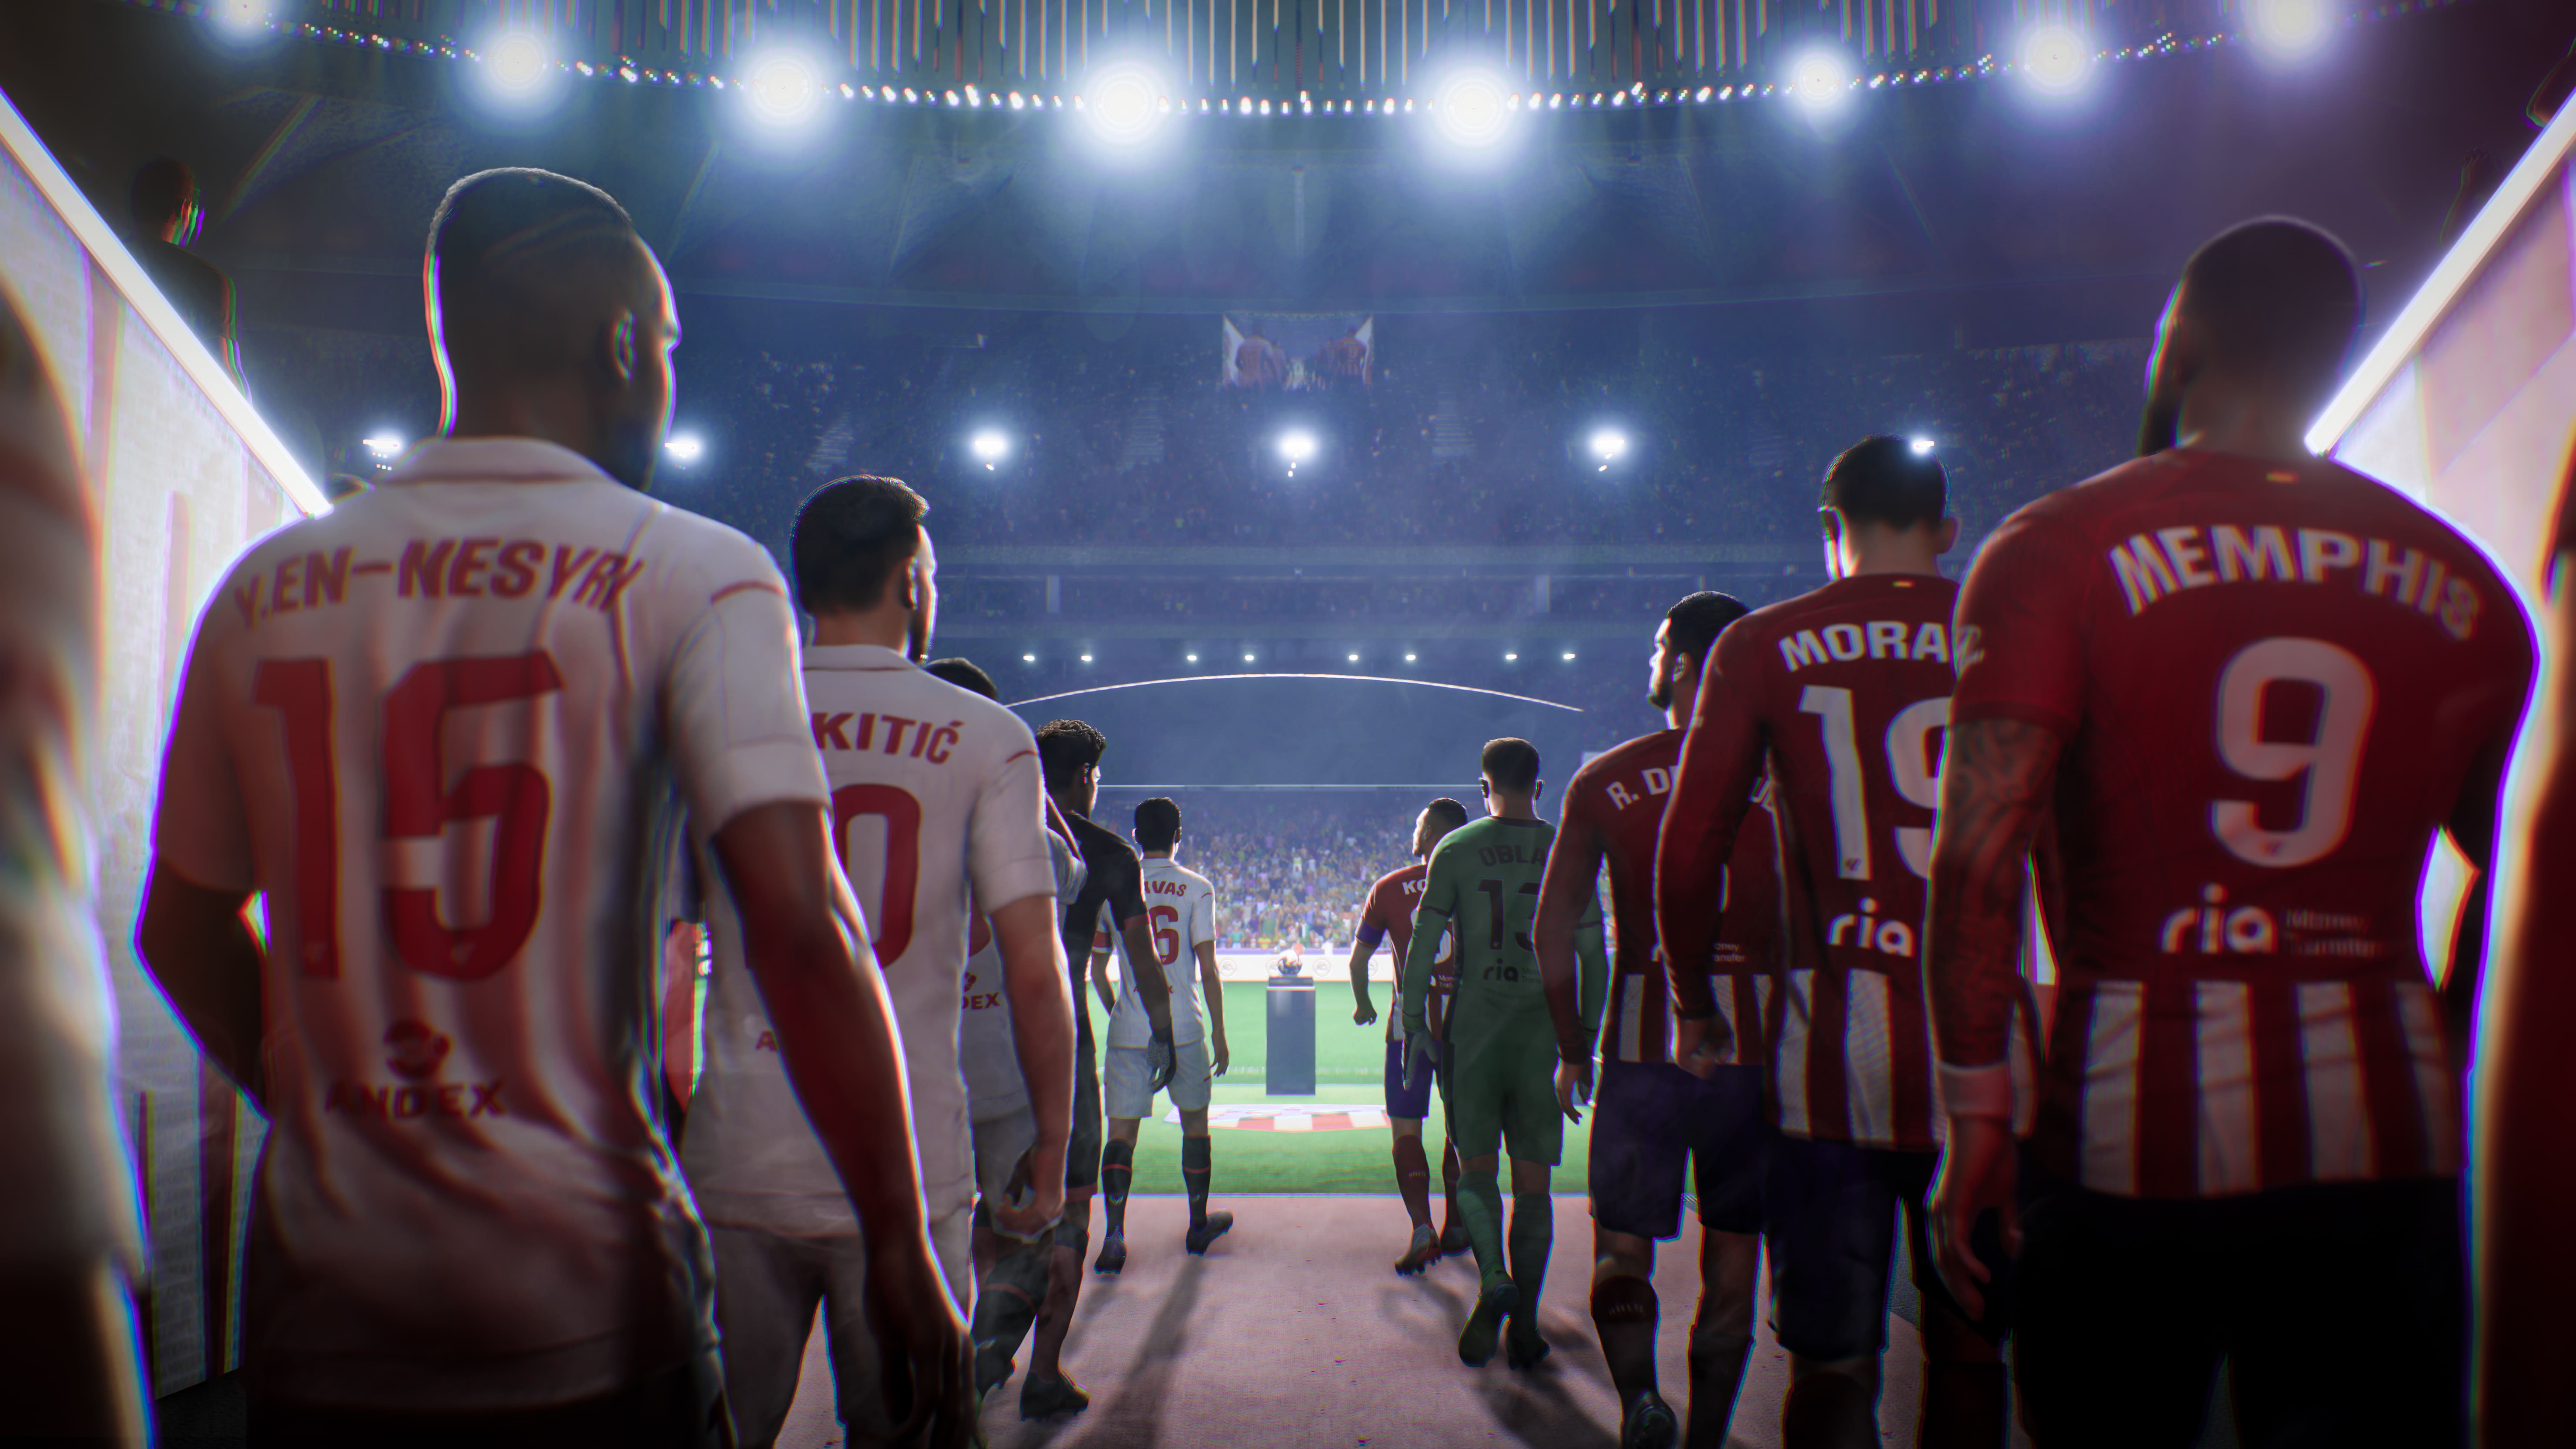 PS5 - EA Sports FC 24 